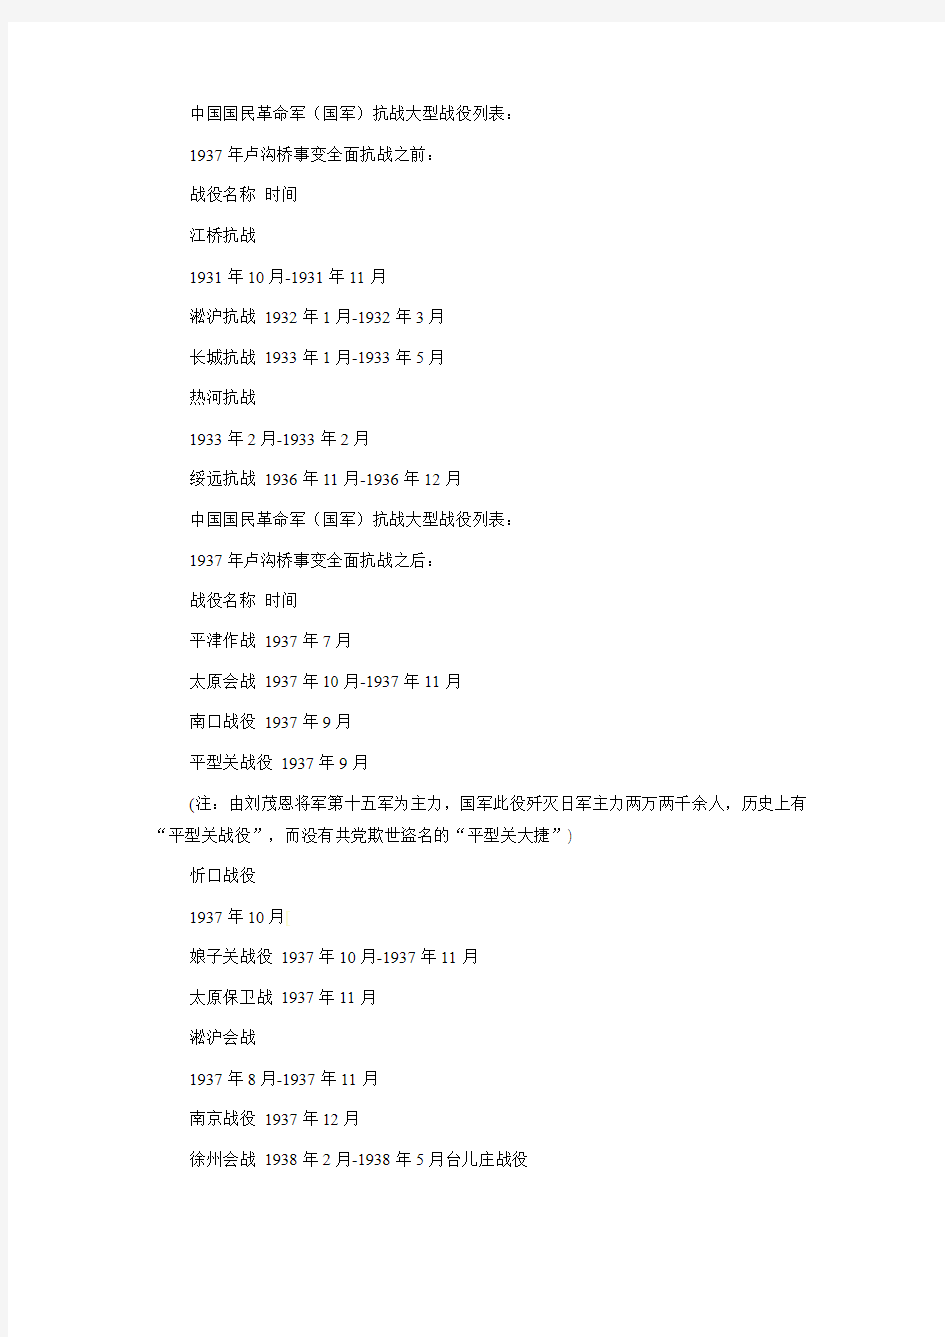 中国国民革命军(国军)抗战大型战役列表：